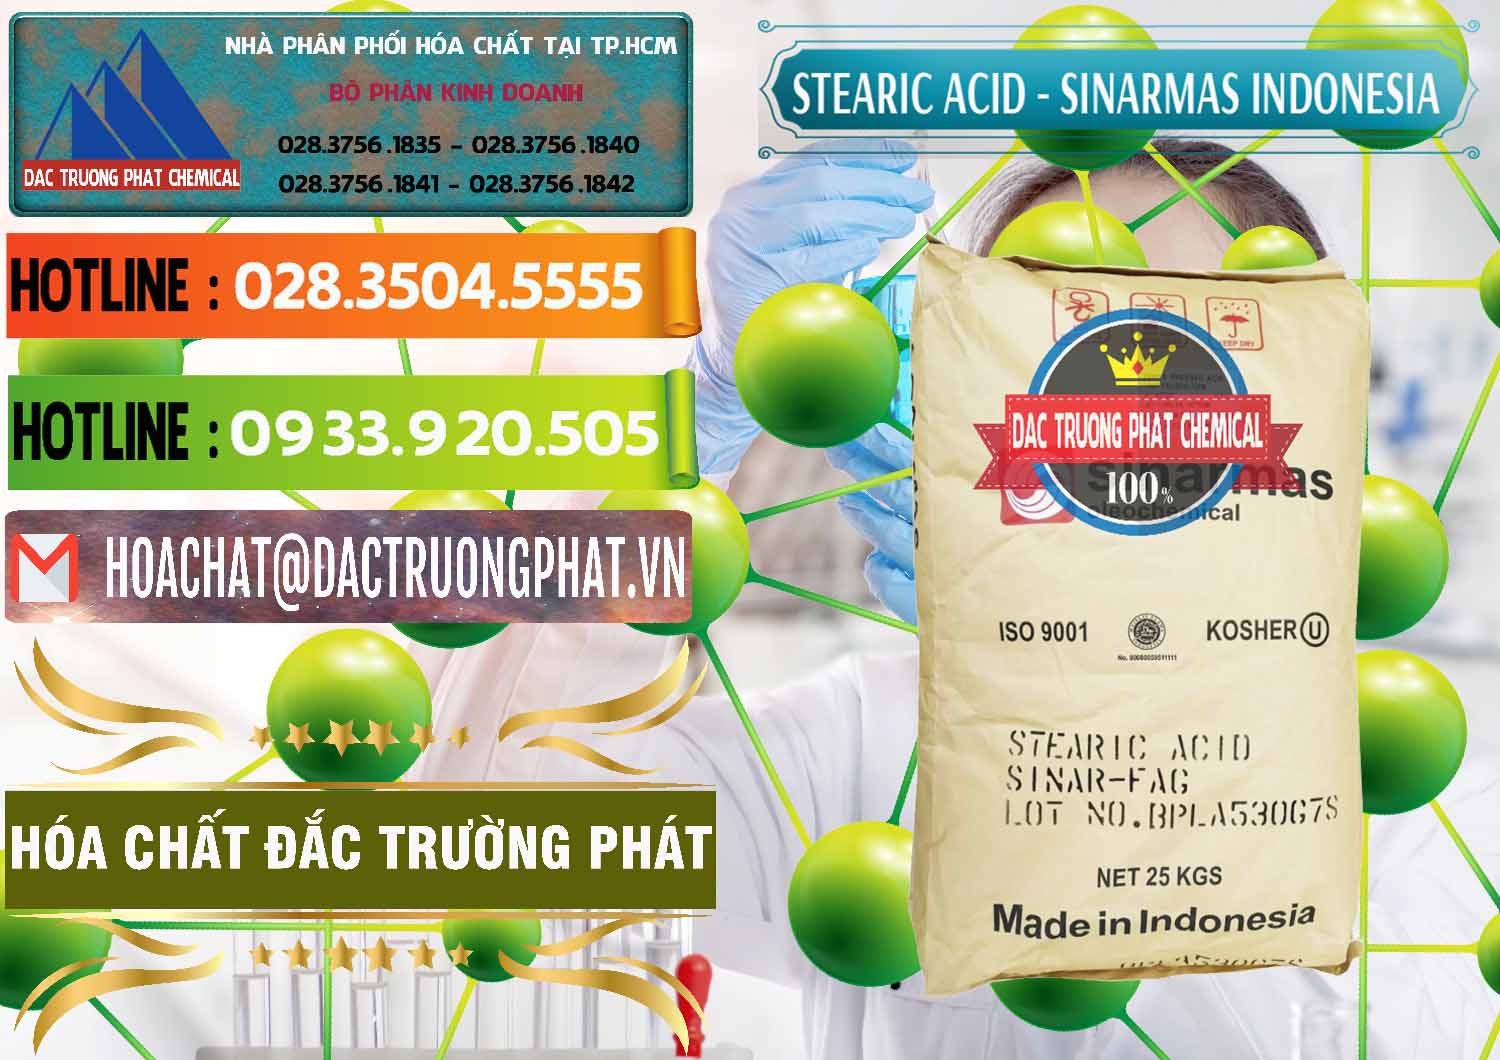 Nơi cung ứng ( bán ) Axit Stearic - Stearic Acid Sinarmas Indonesia - 0389 - Nơi cung cấp và bán hóa chất tại TP.HCM - cungcaphoachat.com.vn